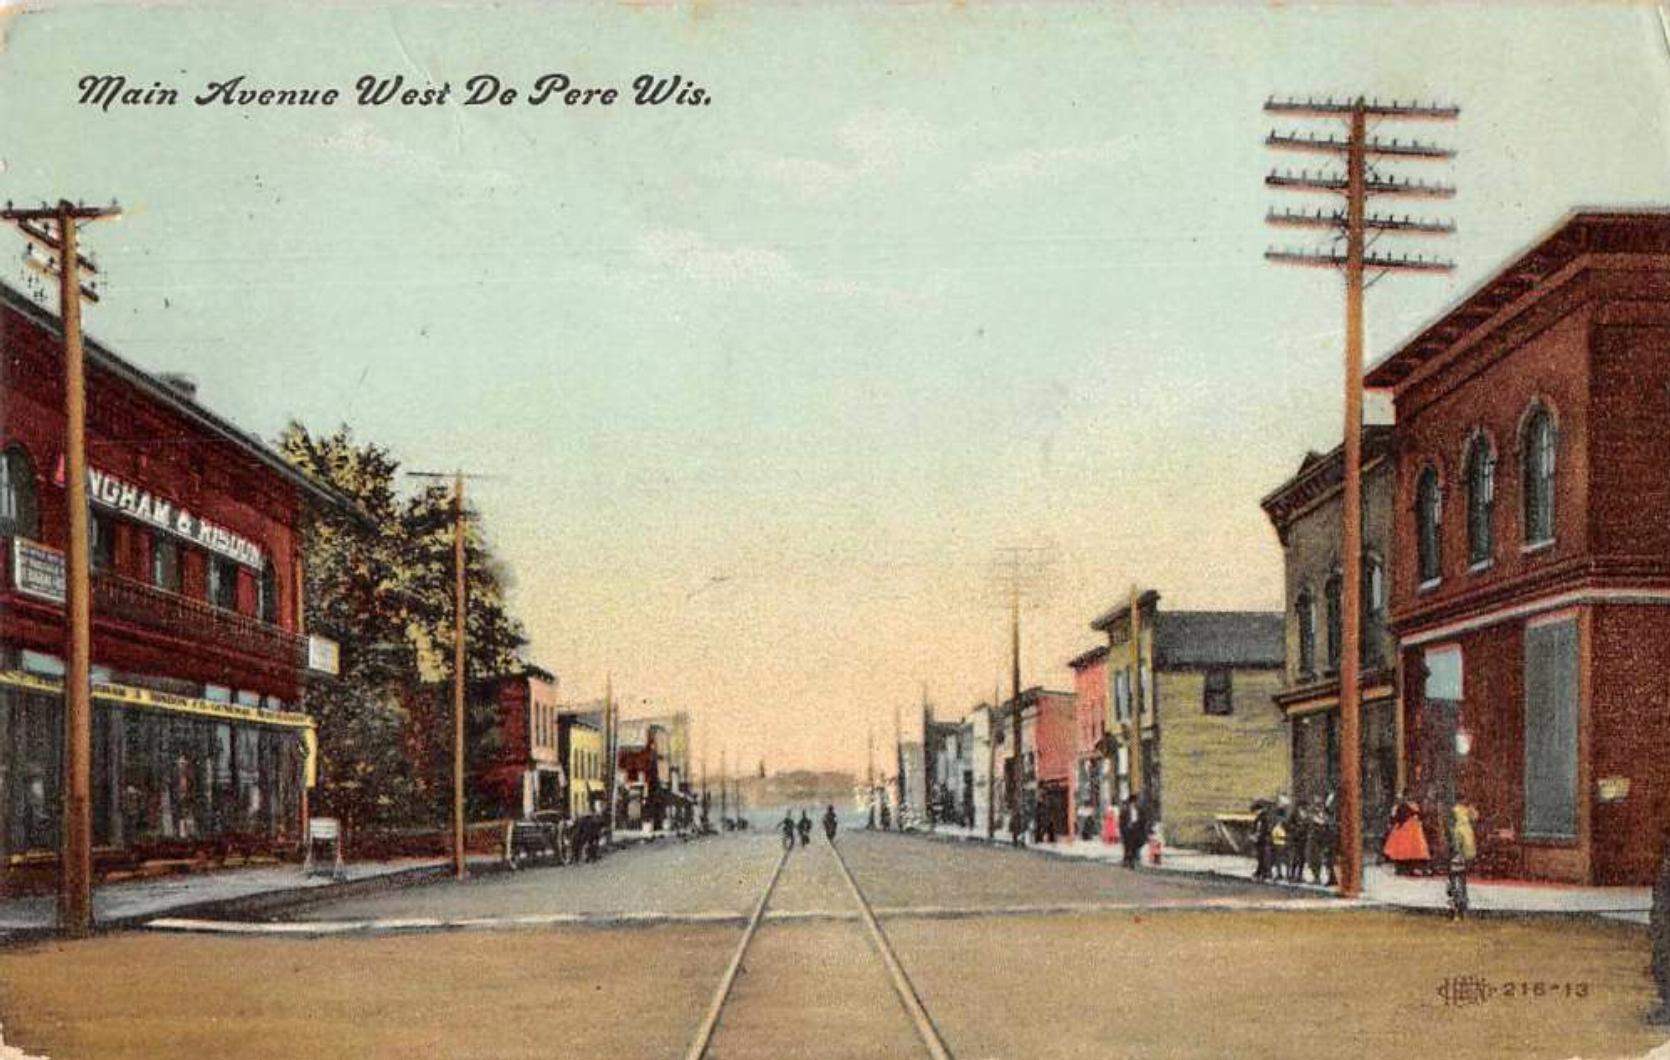 1908 - Main Avenue